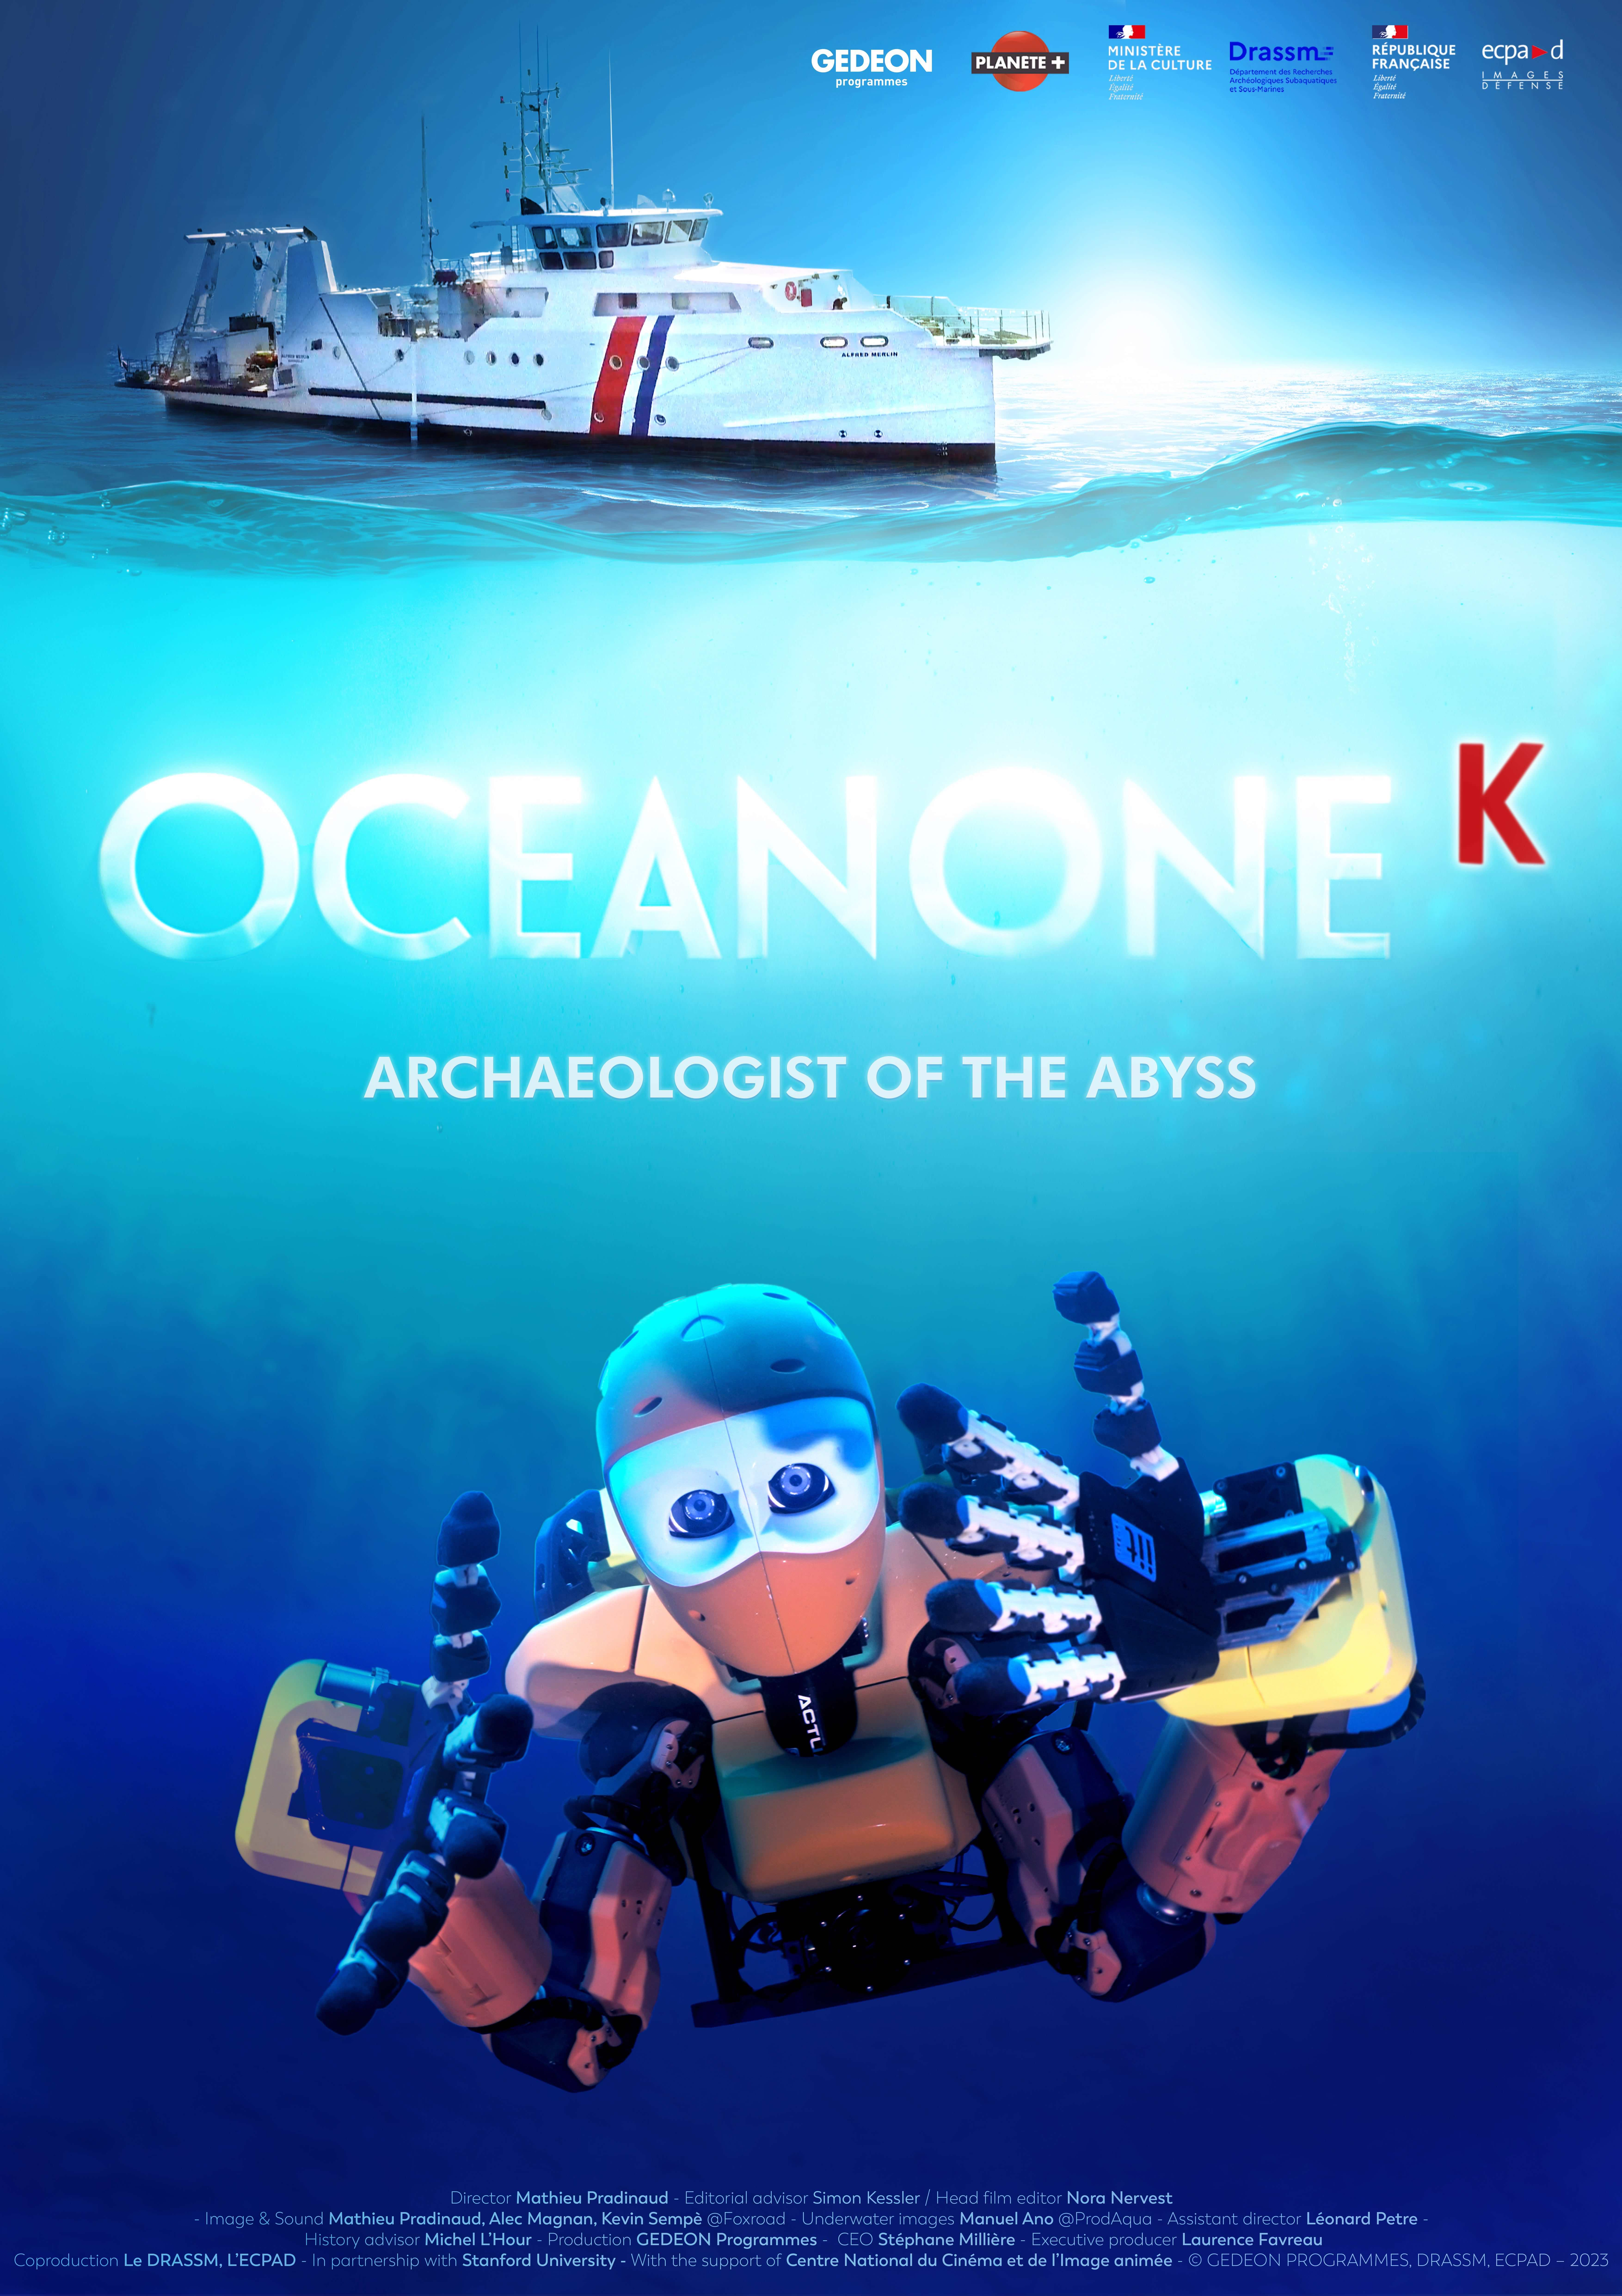 （暂译）海洋一号 K ——来自深渊的考古学家-法国.jpeg